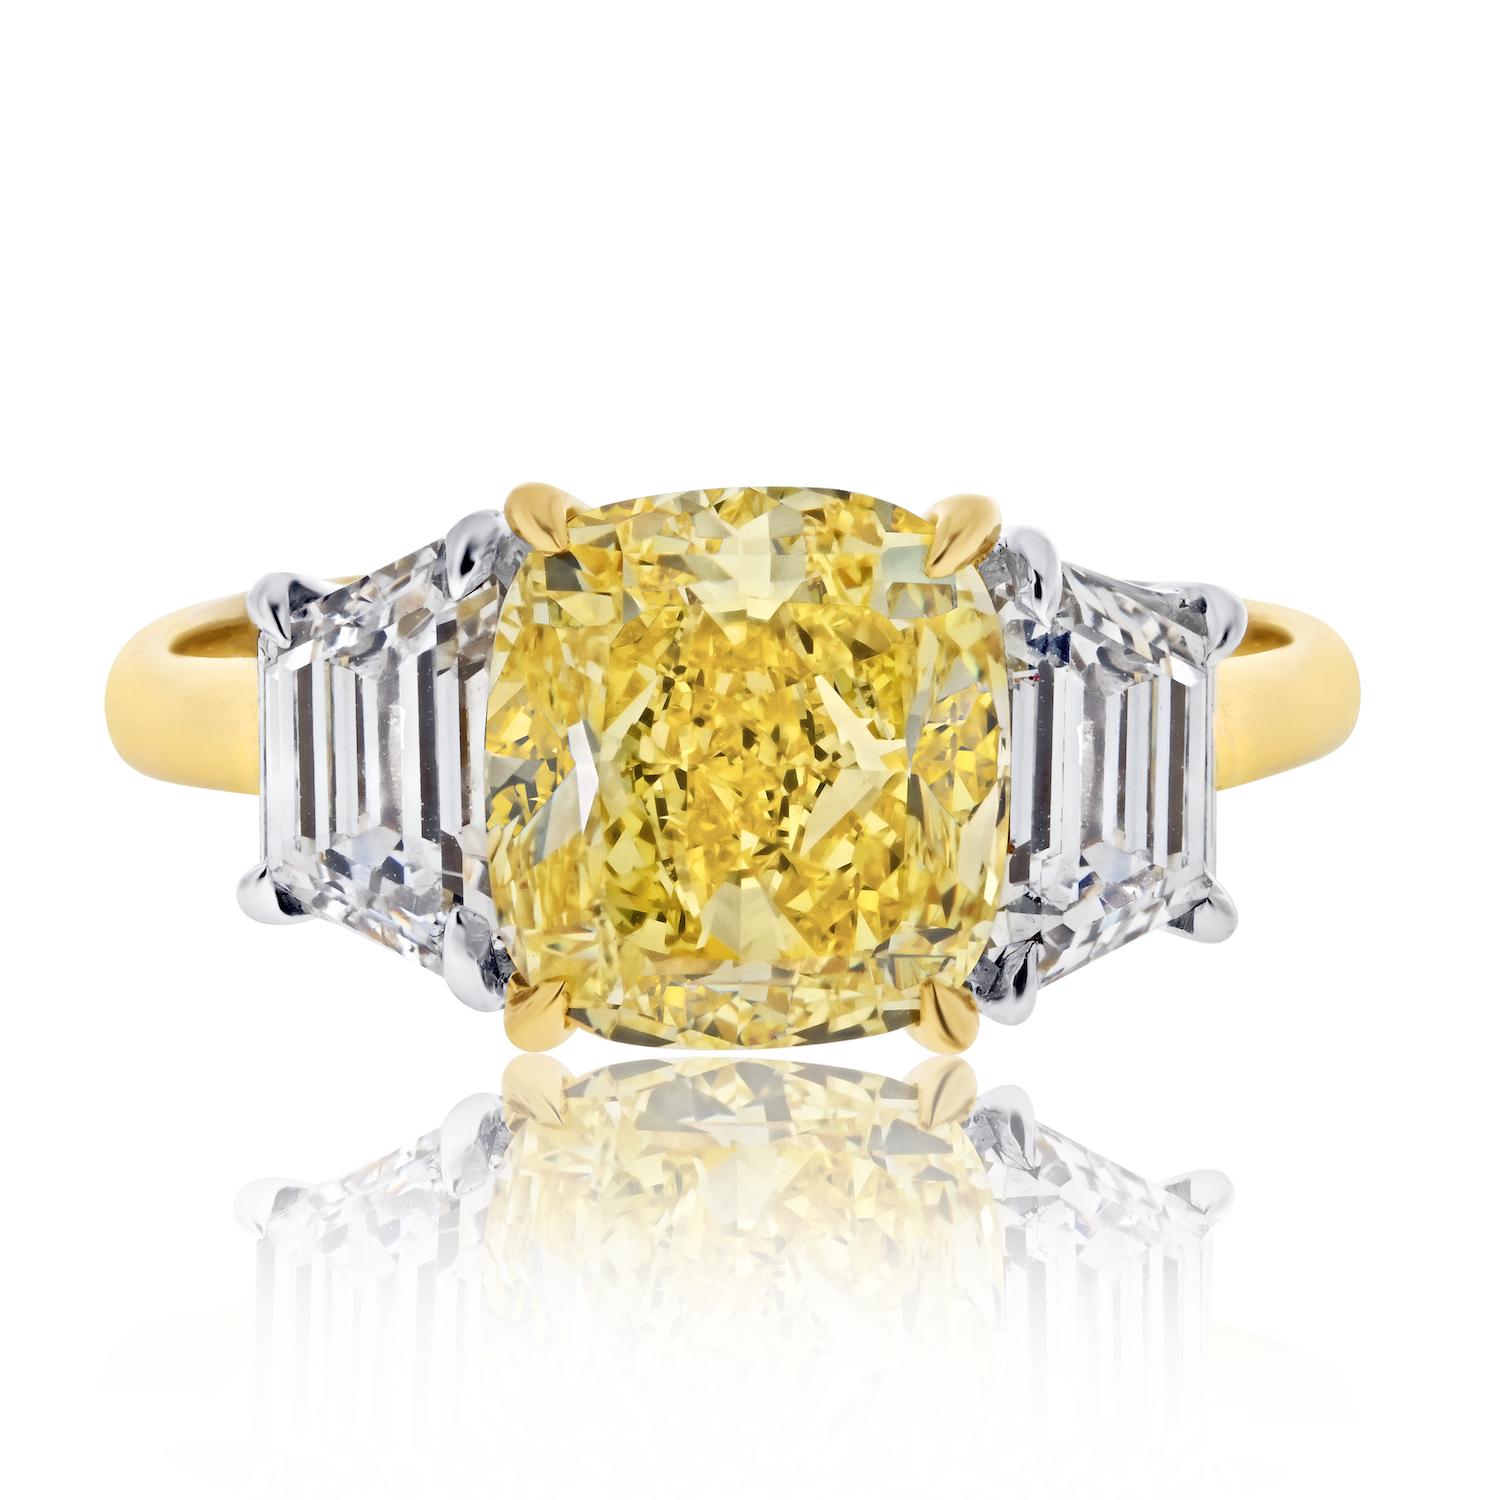 Erhöhen Sie Ihre Liebesgeschichte mit Opulenz und Anmut durch diesen außergewöhnlichen 3,03ct Fancy Vivid Yellow Cushion Cut Three Stone Diamond Engagement Ring. 

Sein Herzstück ist ein faszinierender 3,03-Karat-Diamant in Fancy Vivid Yellow,